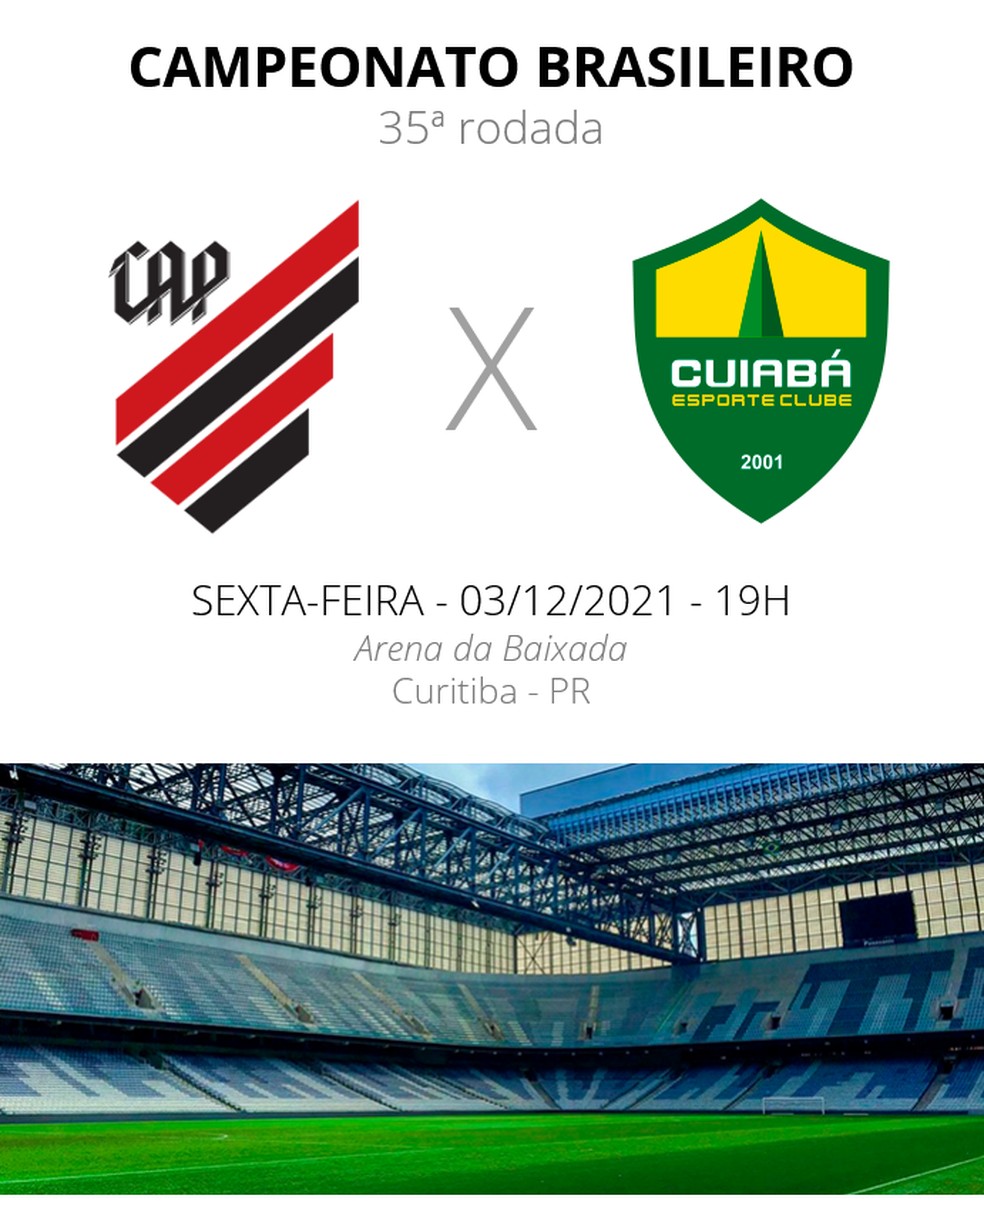 Brasileirão: como foram os últimos jogos entre Cuiabá e Athletico?